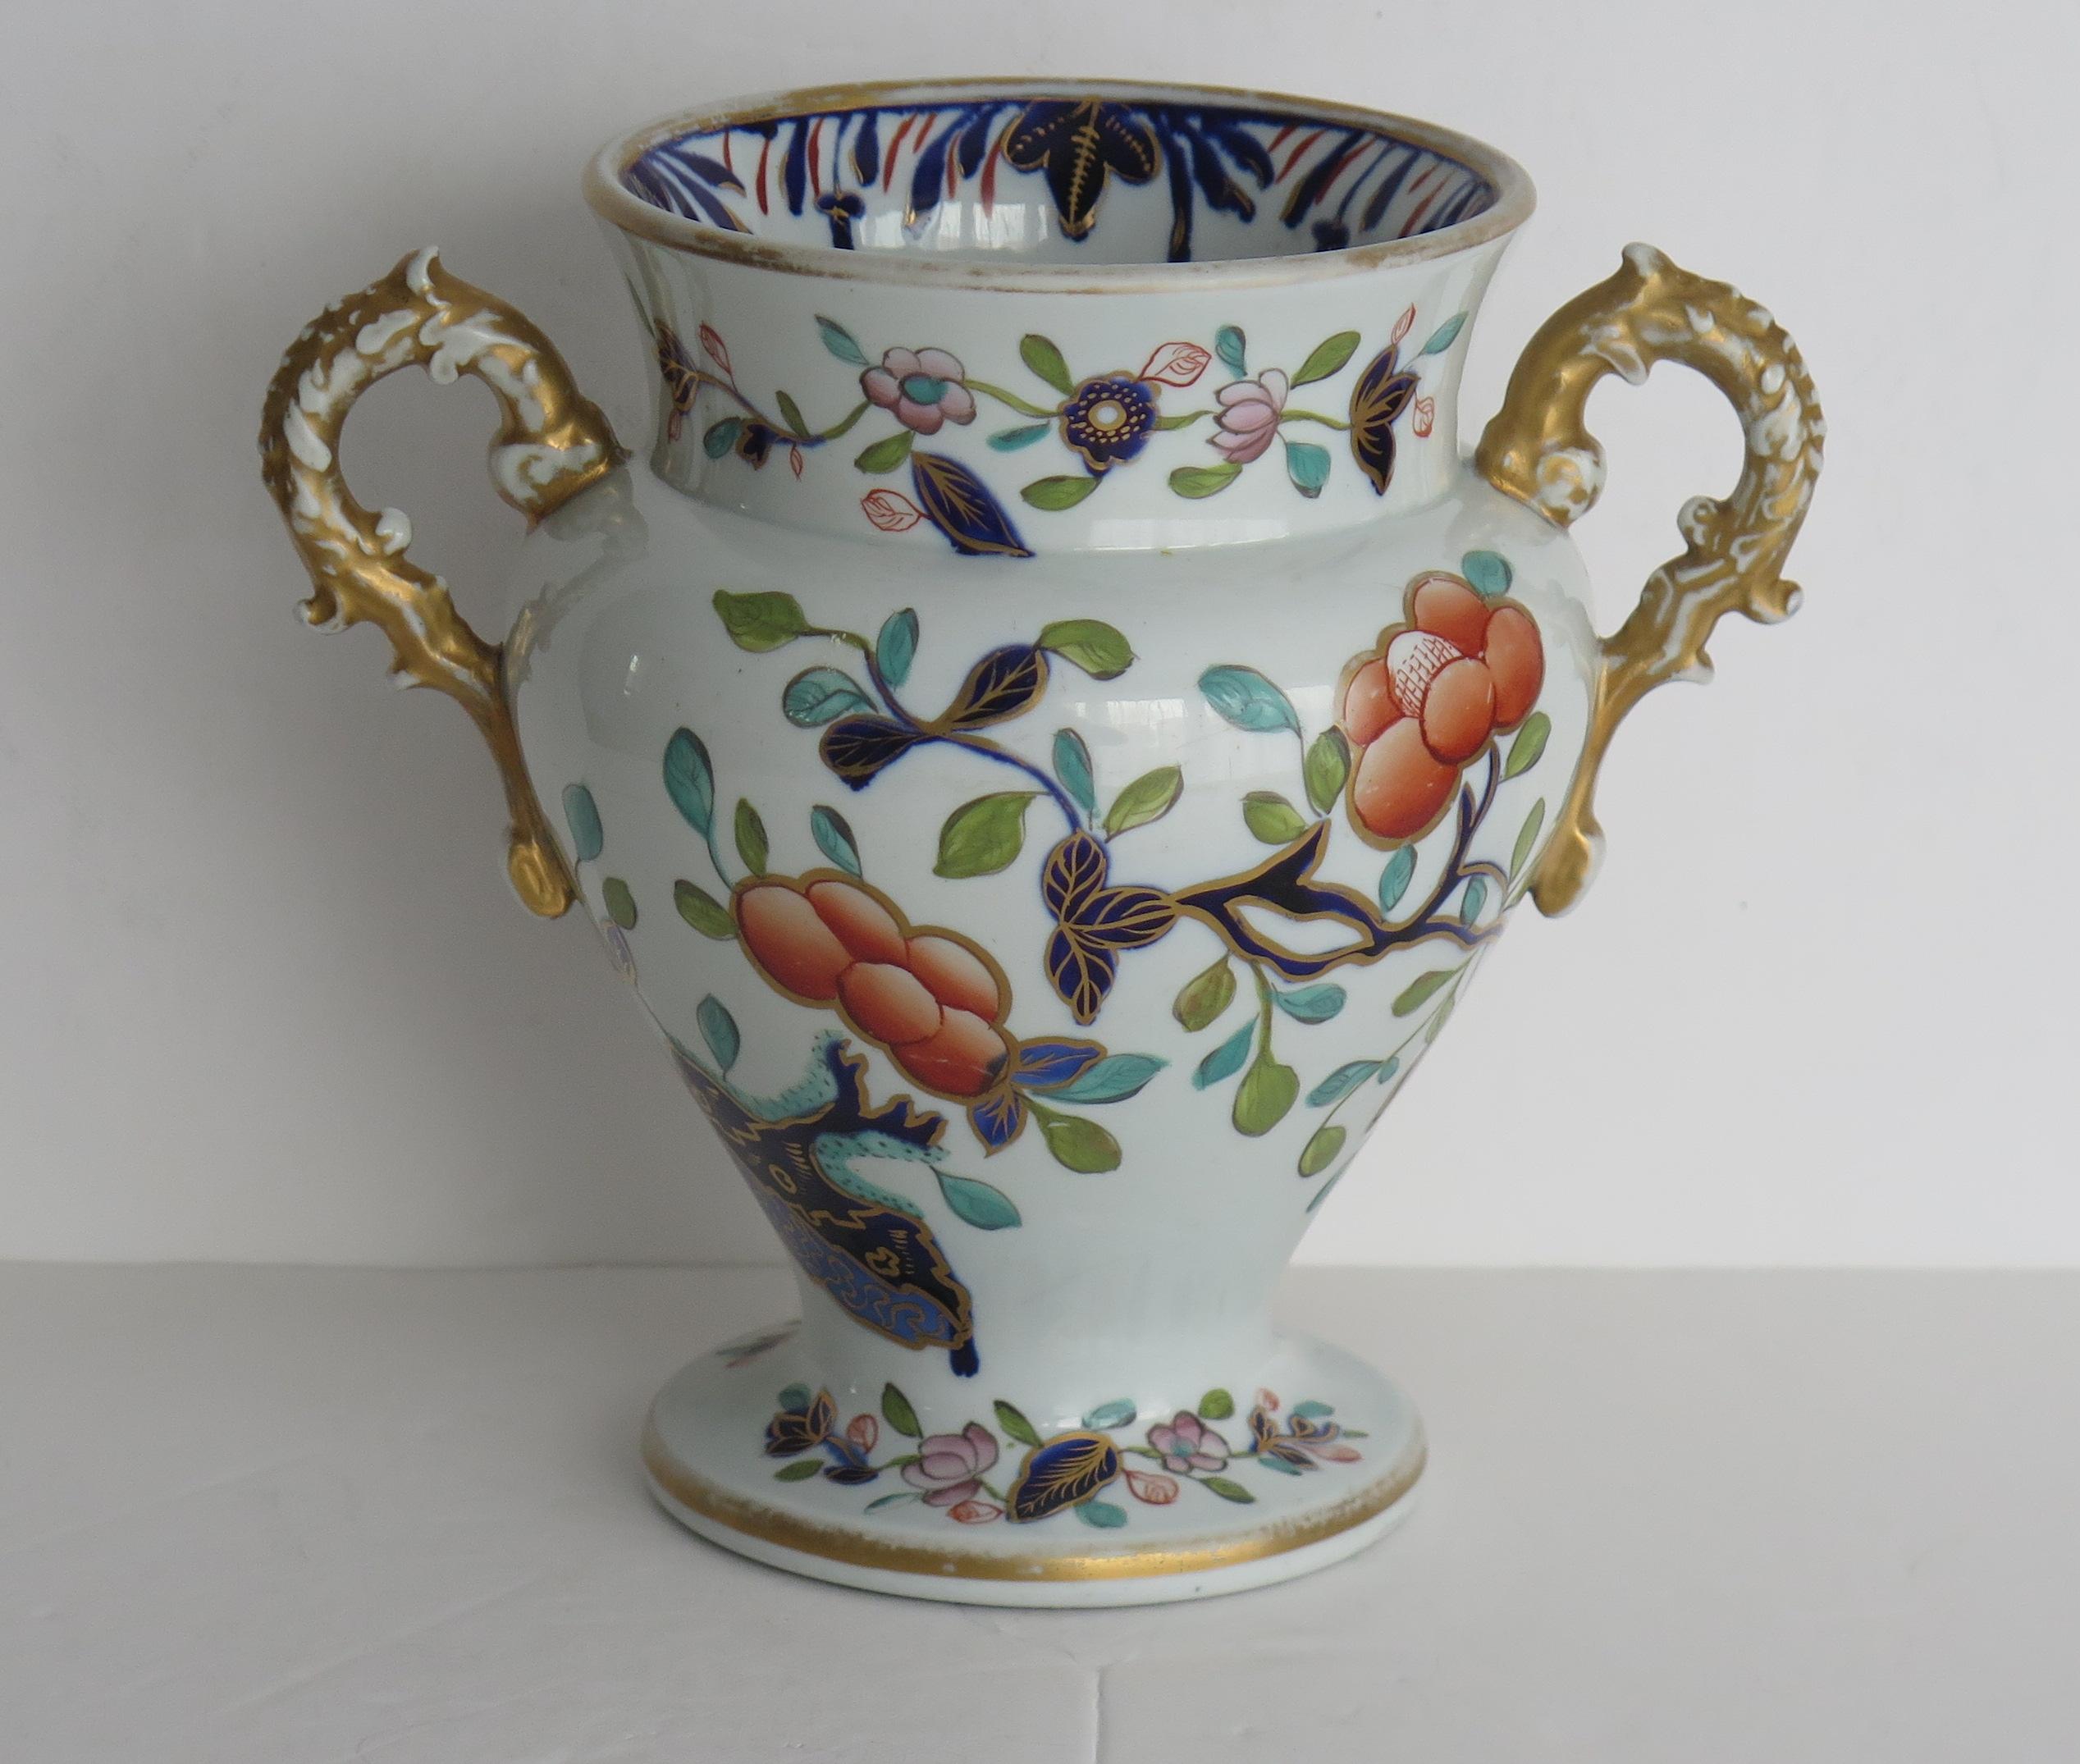 Il s'agit d'un vase rare, très ancien, en pierre de fer, avec un motif japonais typique peint à la main, fabriqué par l'usine Mason's au début du XIXe siècle, vers 1815.

Le vase est de forme balustre et repose sur un pied circulaire, avec deux